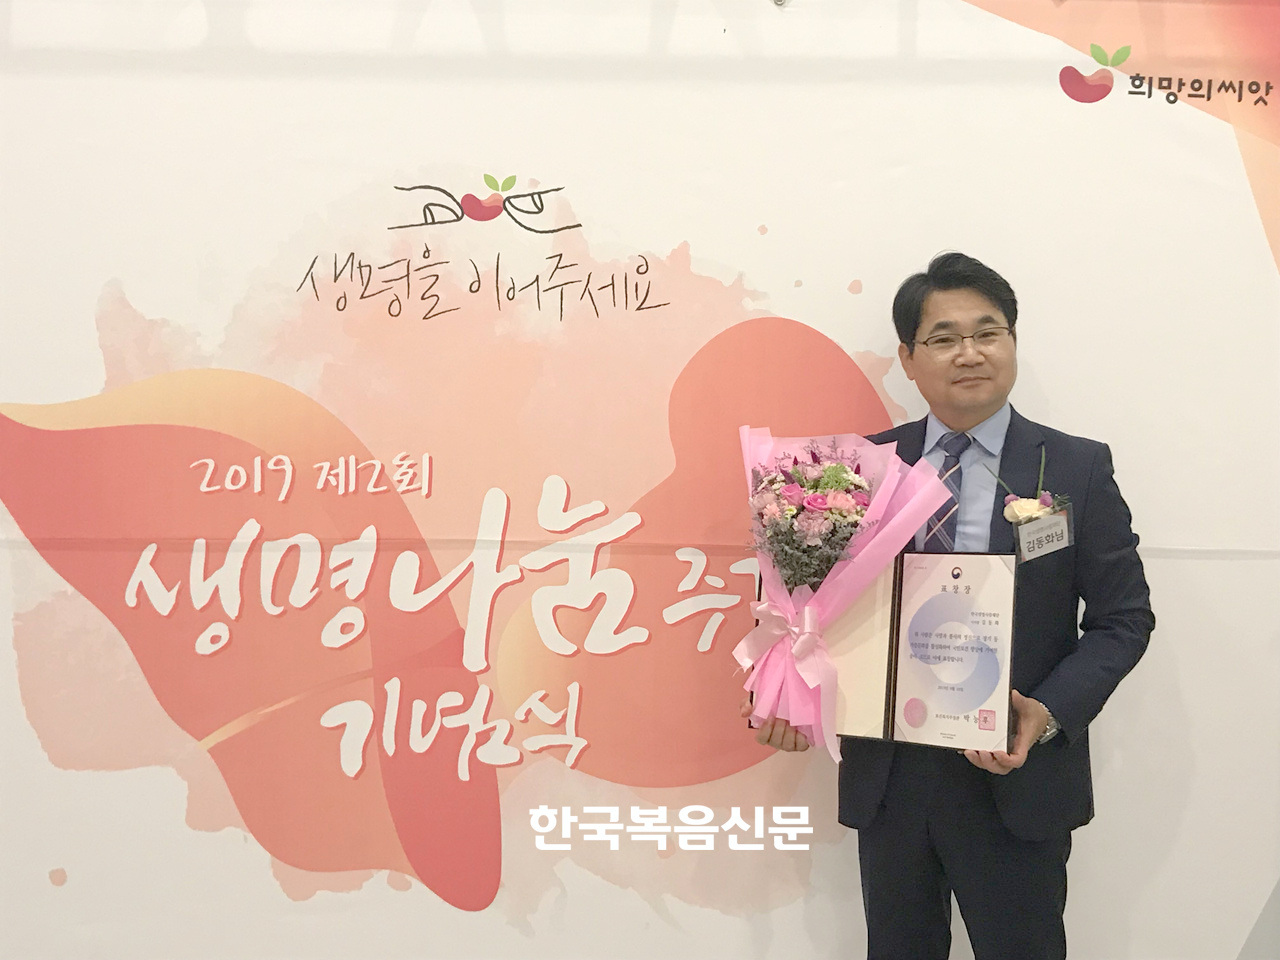 생명나눔문화 확산에 주력한 공로로 김동화 목사가 2019 생명나눔주간 기념식에서 보건복지부장관 표창을 수상했다.